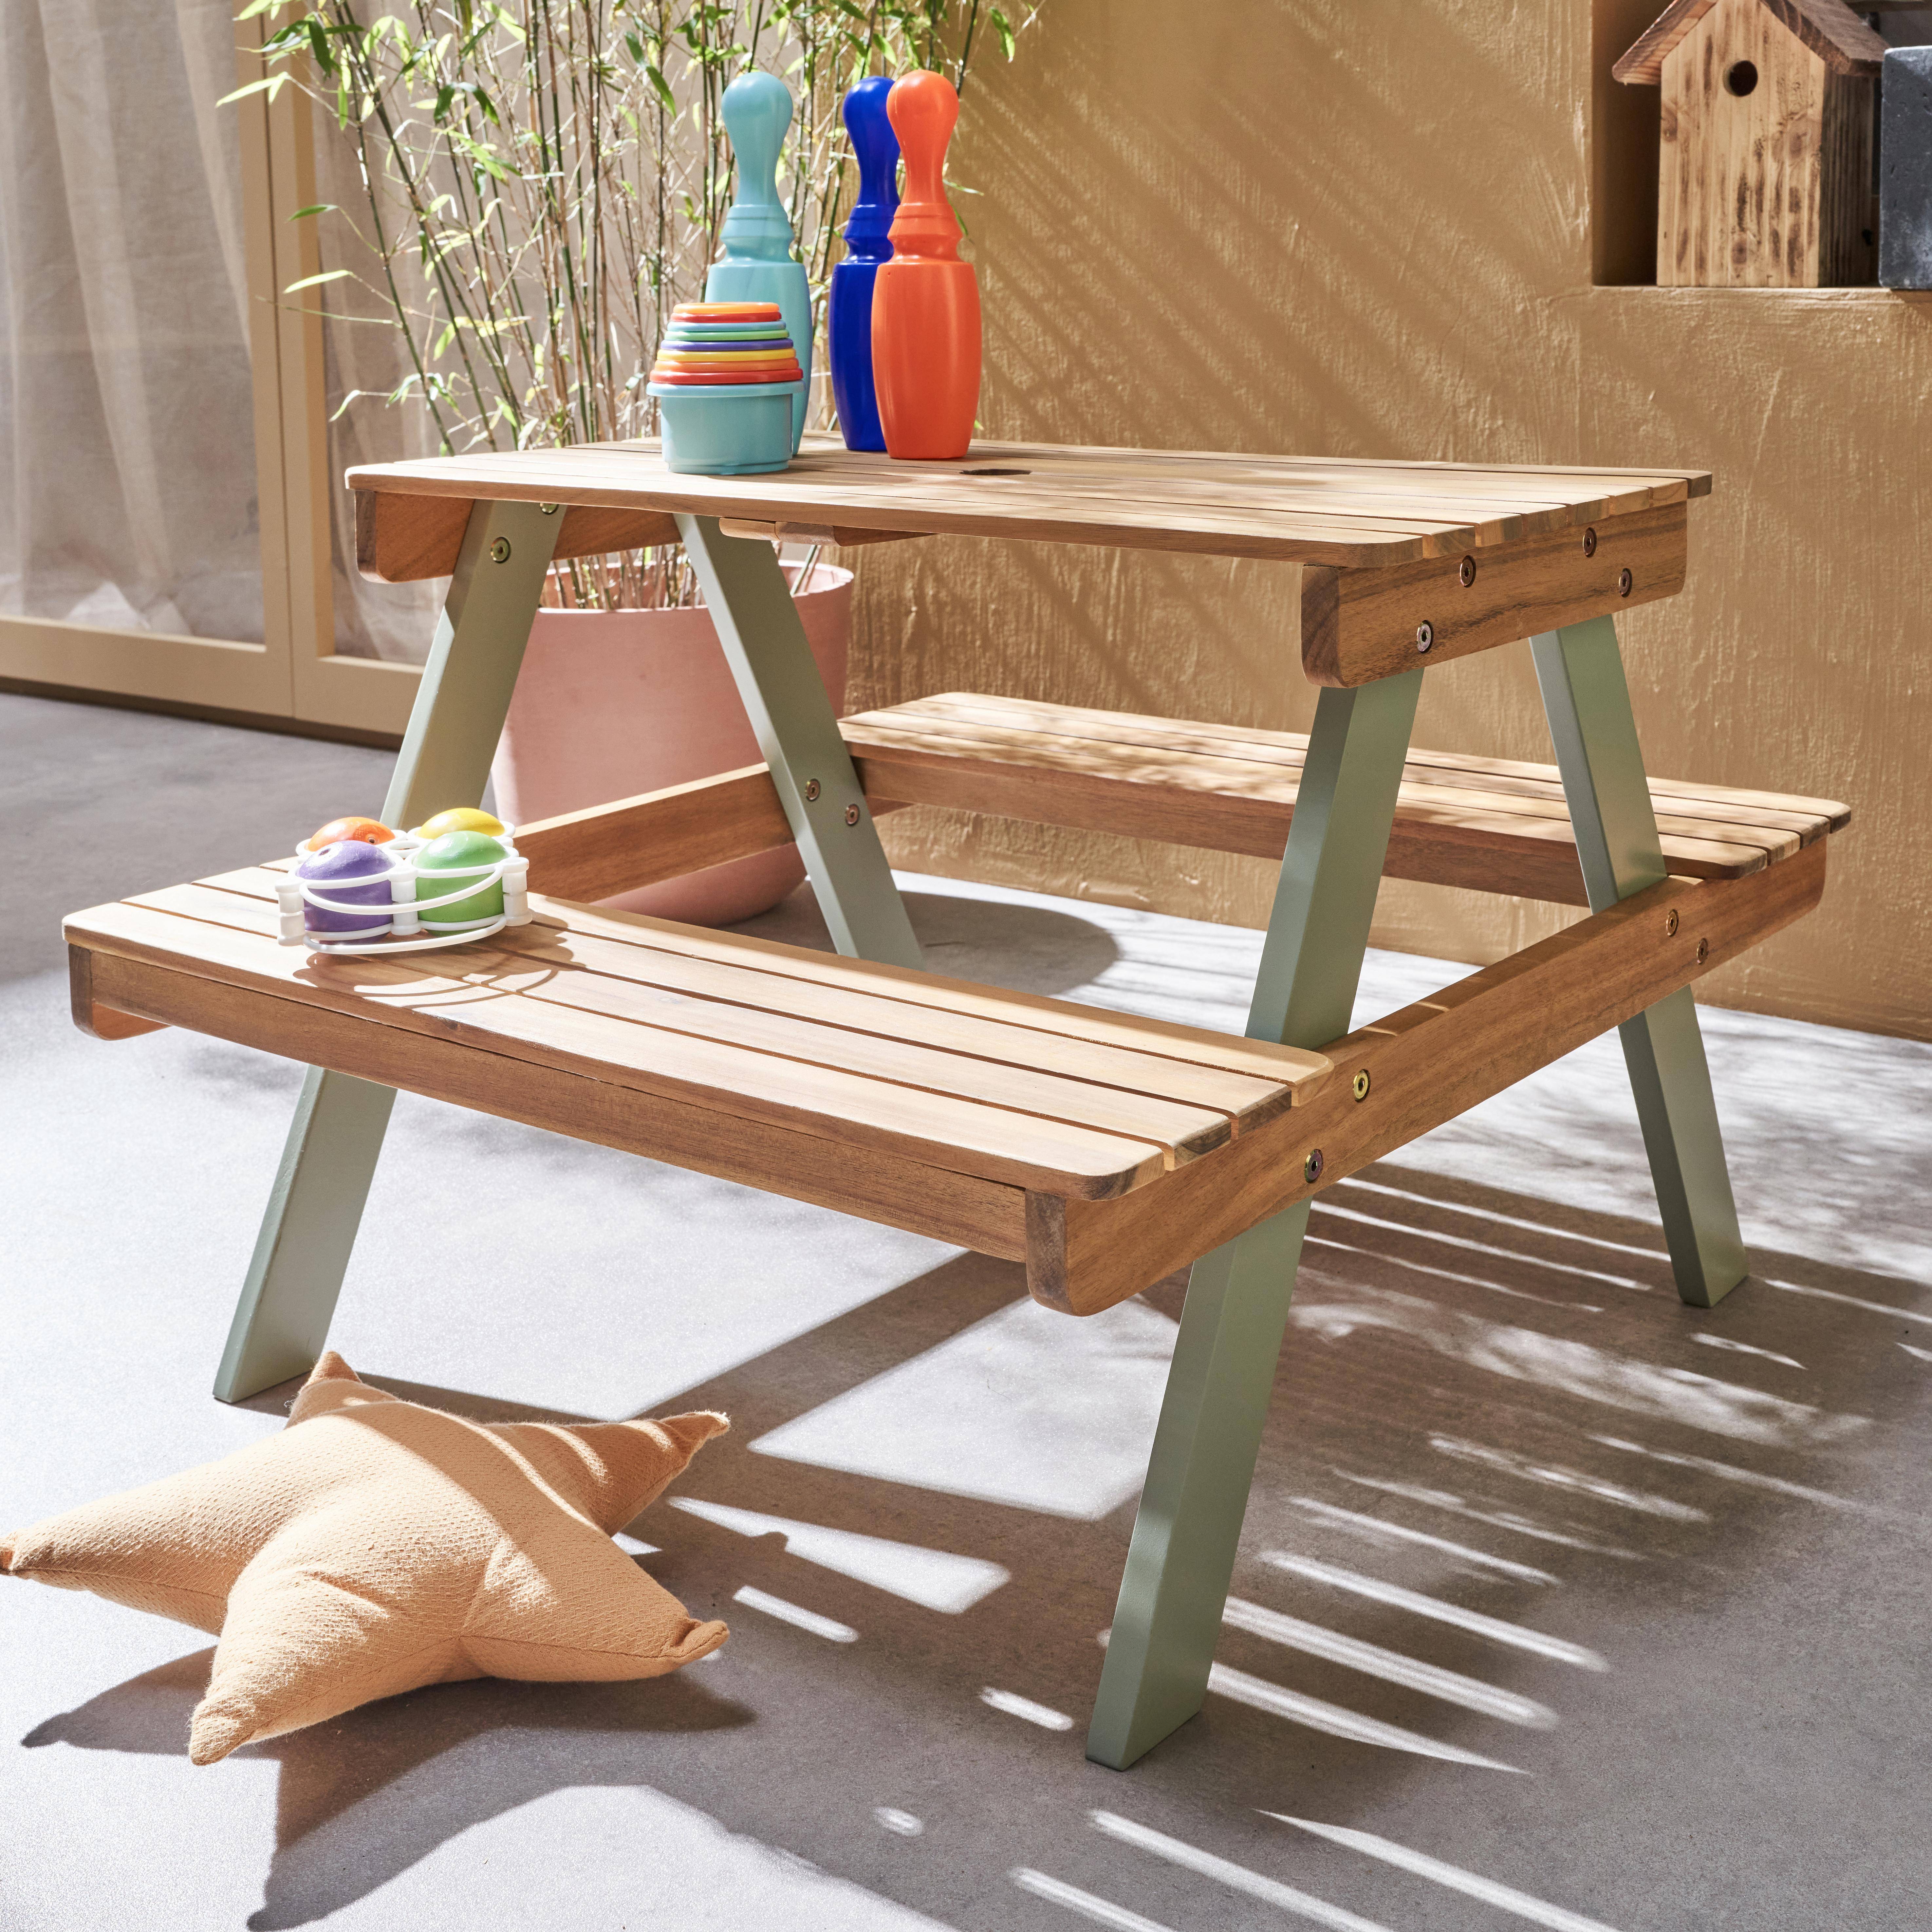 Picknicktisch aus hellem Akazienholz für Kinder, 2 Sitzplätze, naturfarben und graugrün,sweeek,Photo2